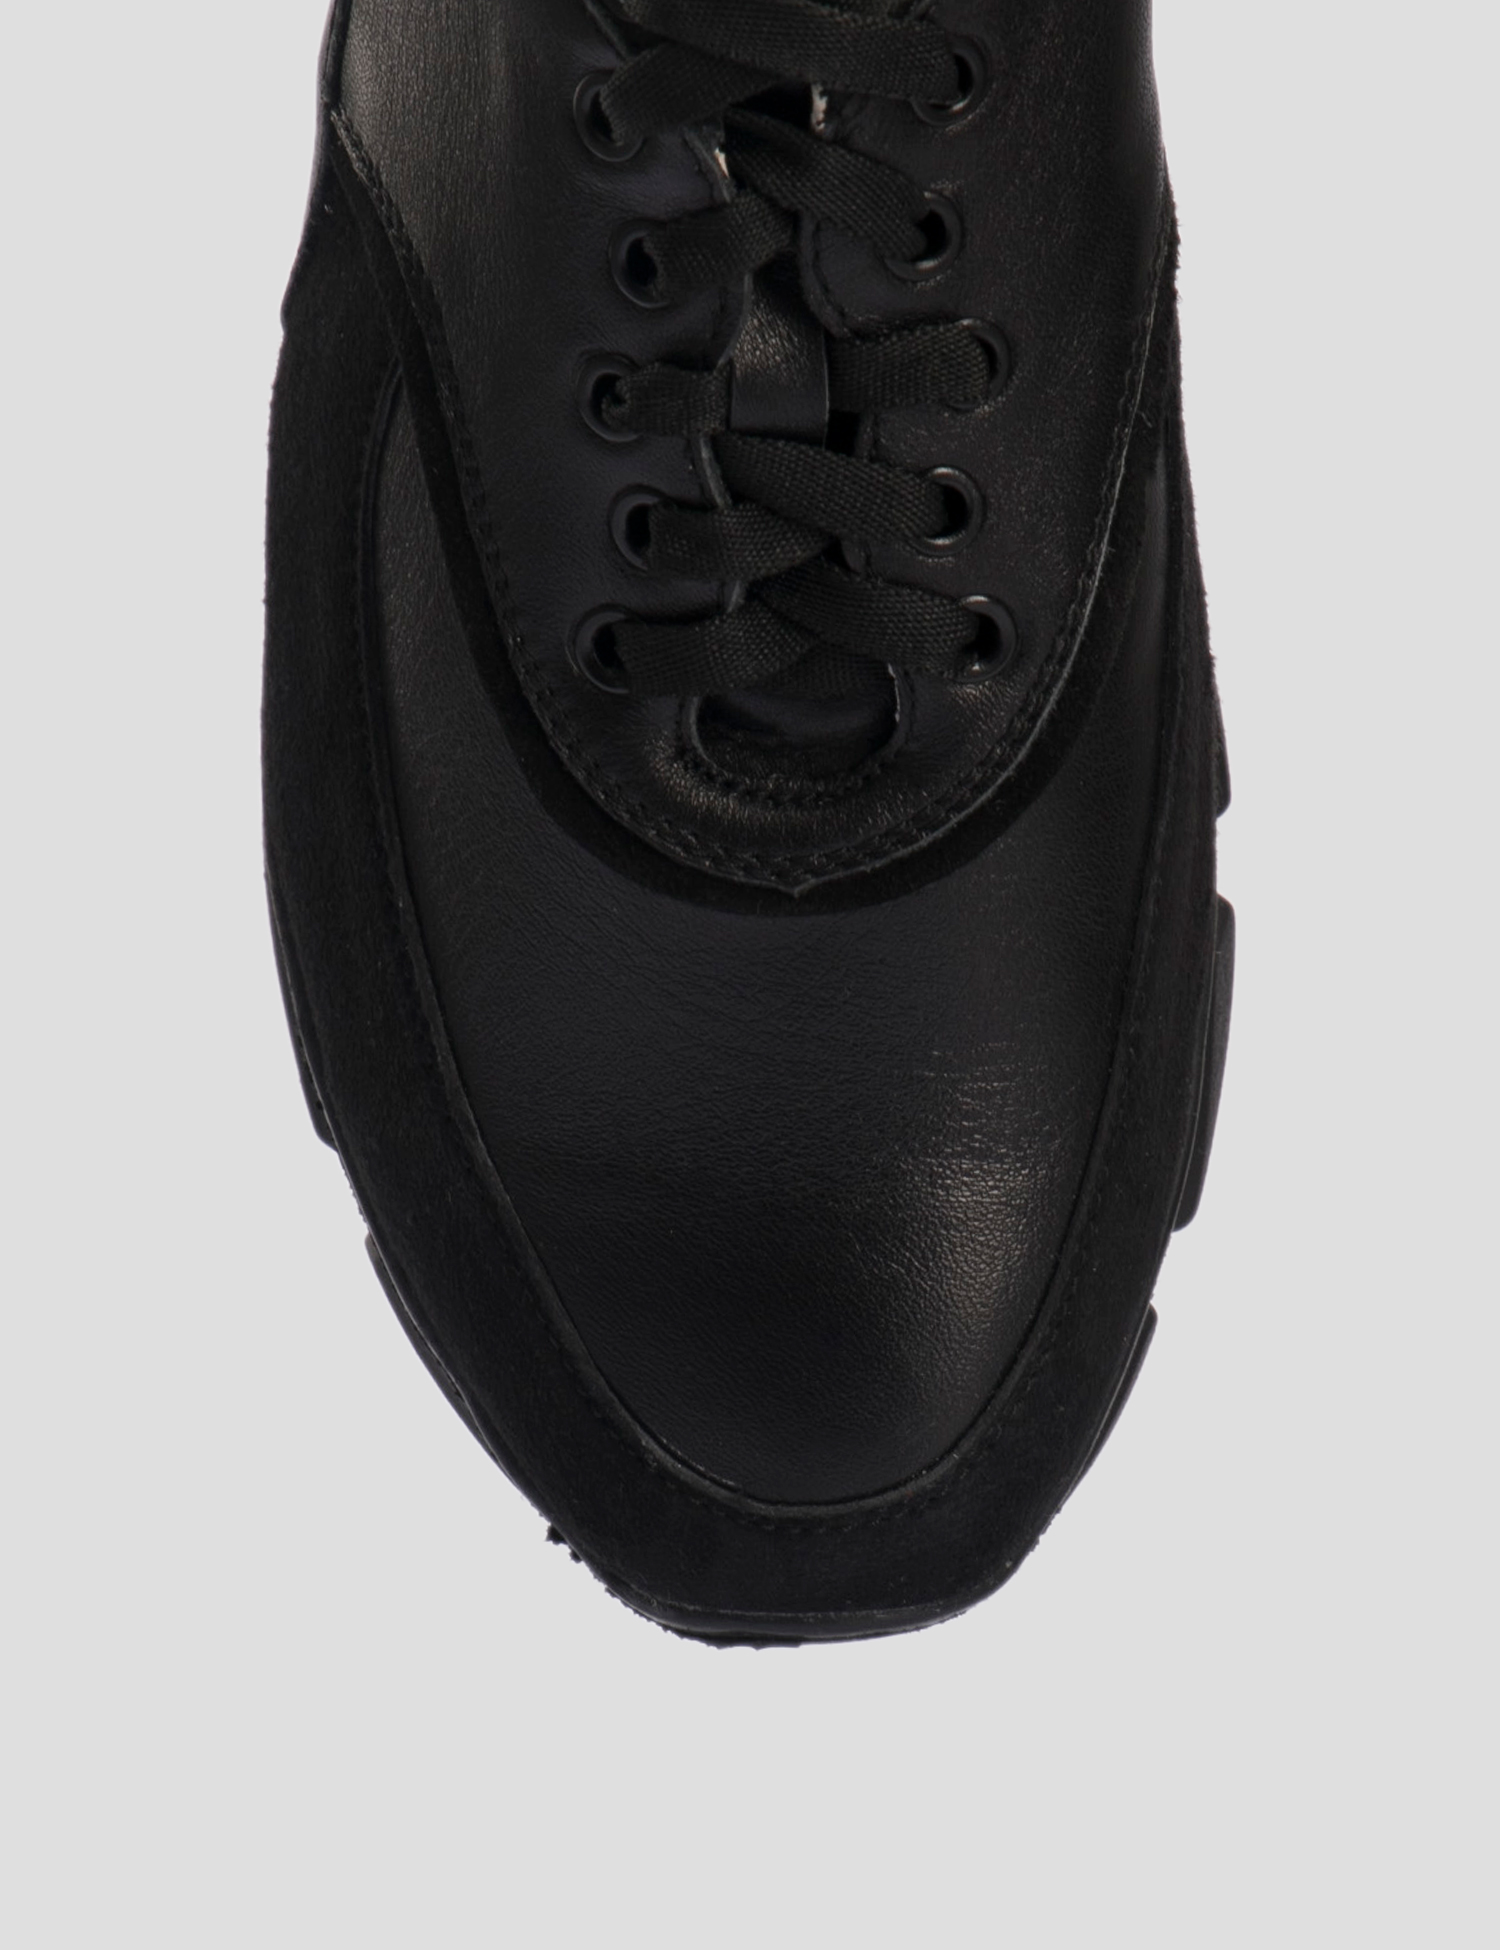 Картинка Жіночі чорні шкіряні кросівки